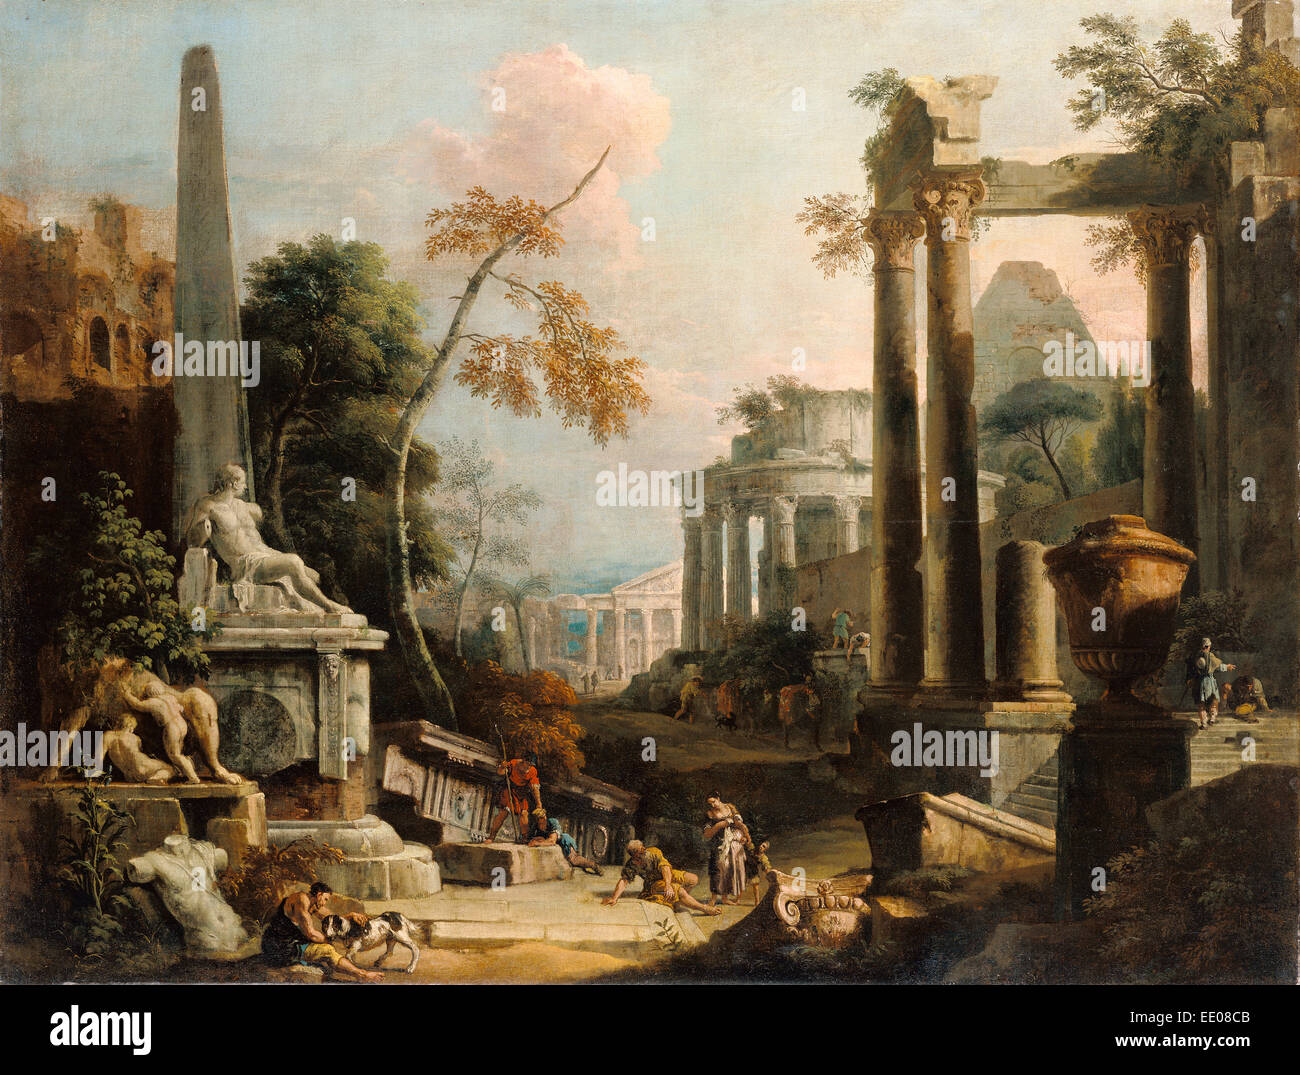 Paysage avec ruines classiques et des chiffres ; Marco Ricci, Italien, 1676 - 1730, et Sebastiano Ricci, Italien, 1659 - 1734 Banque D'Images